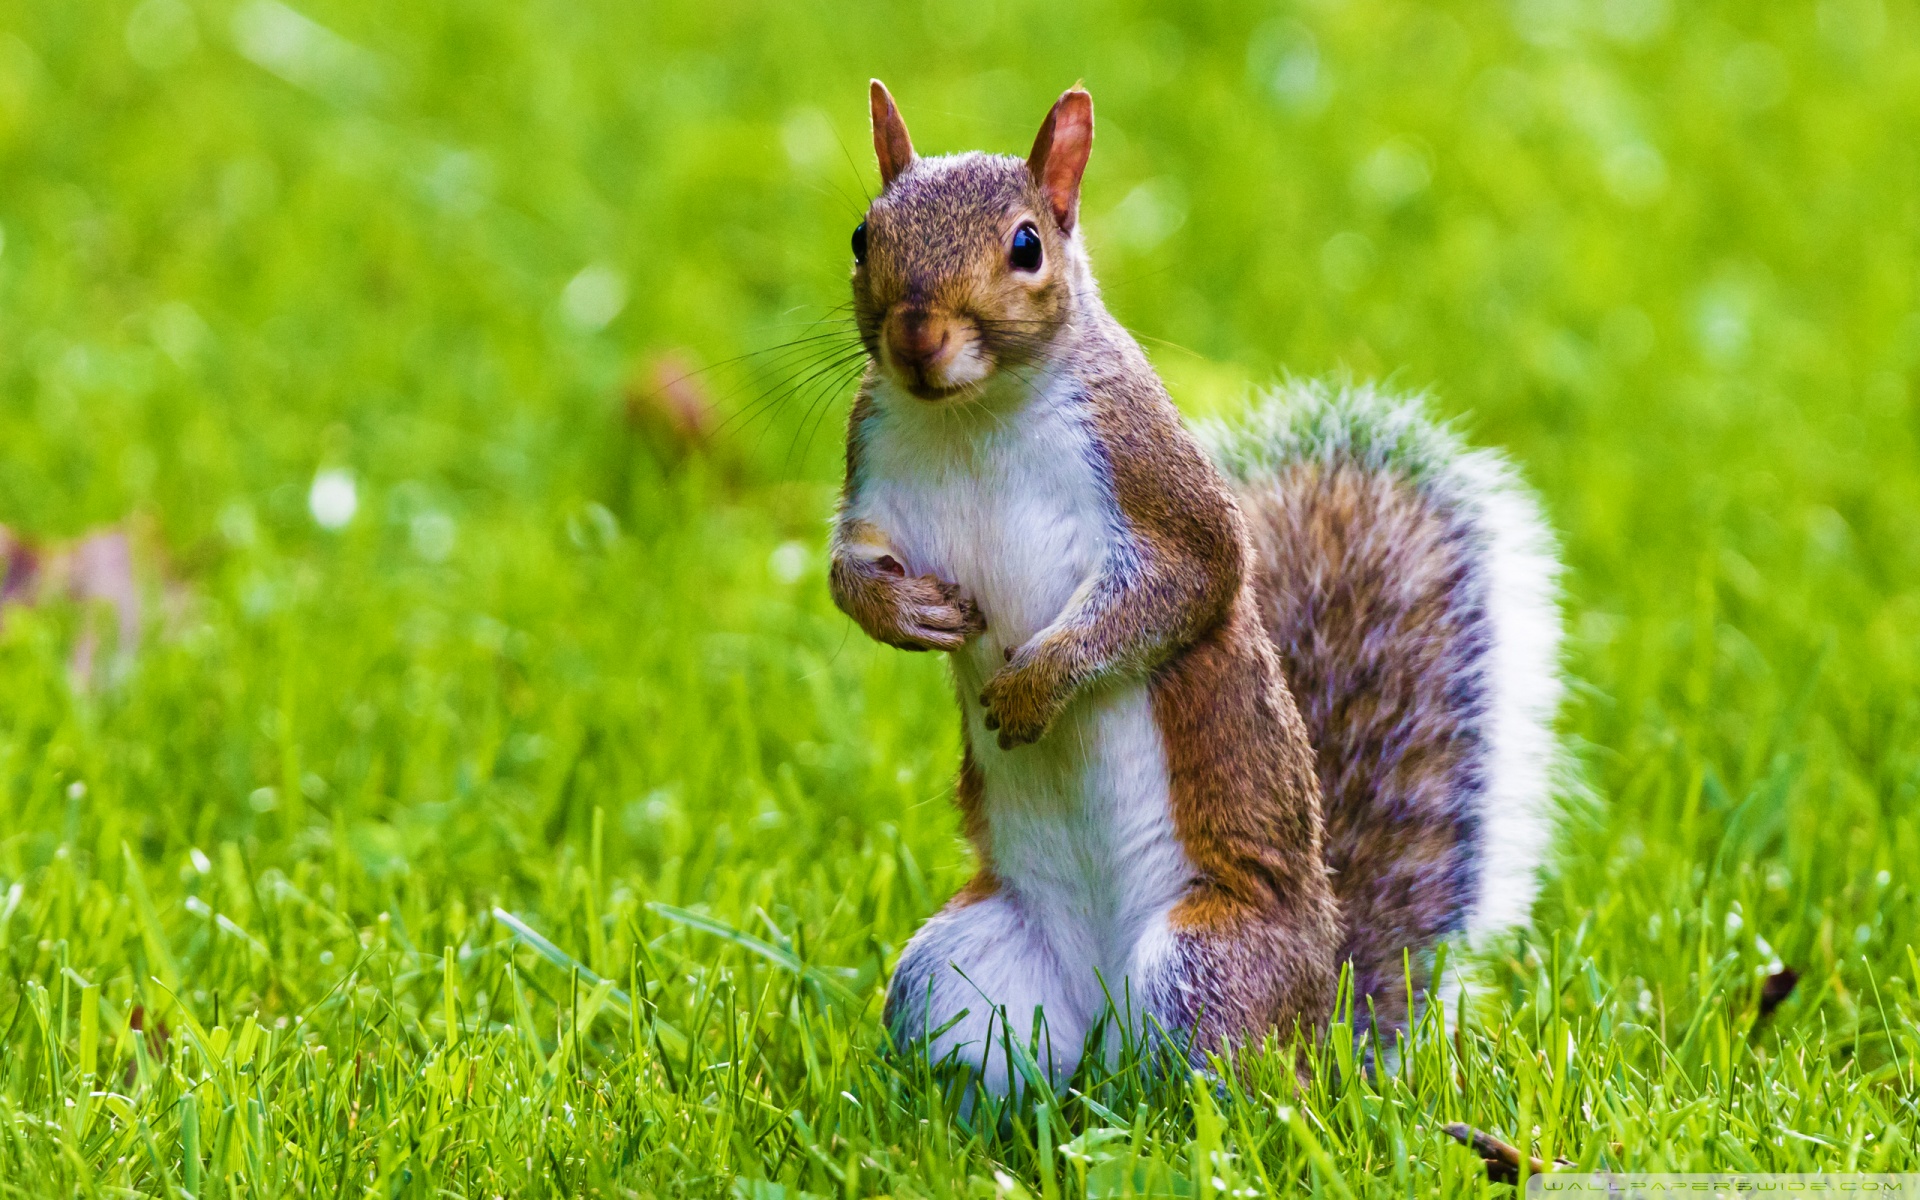 Squirrel animal photos free download 5,810 .jpg files